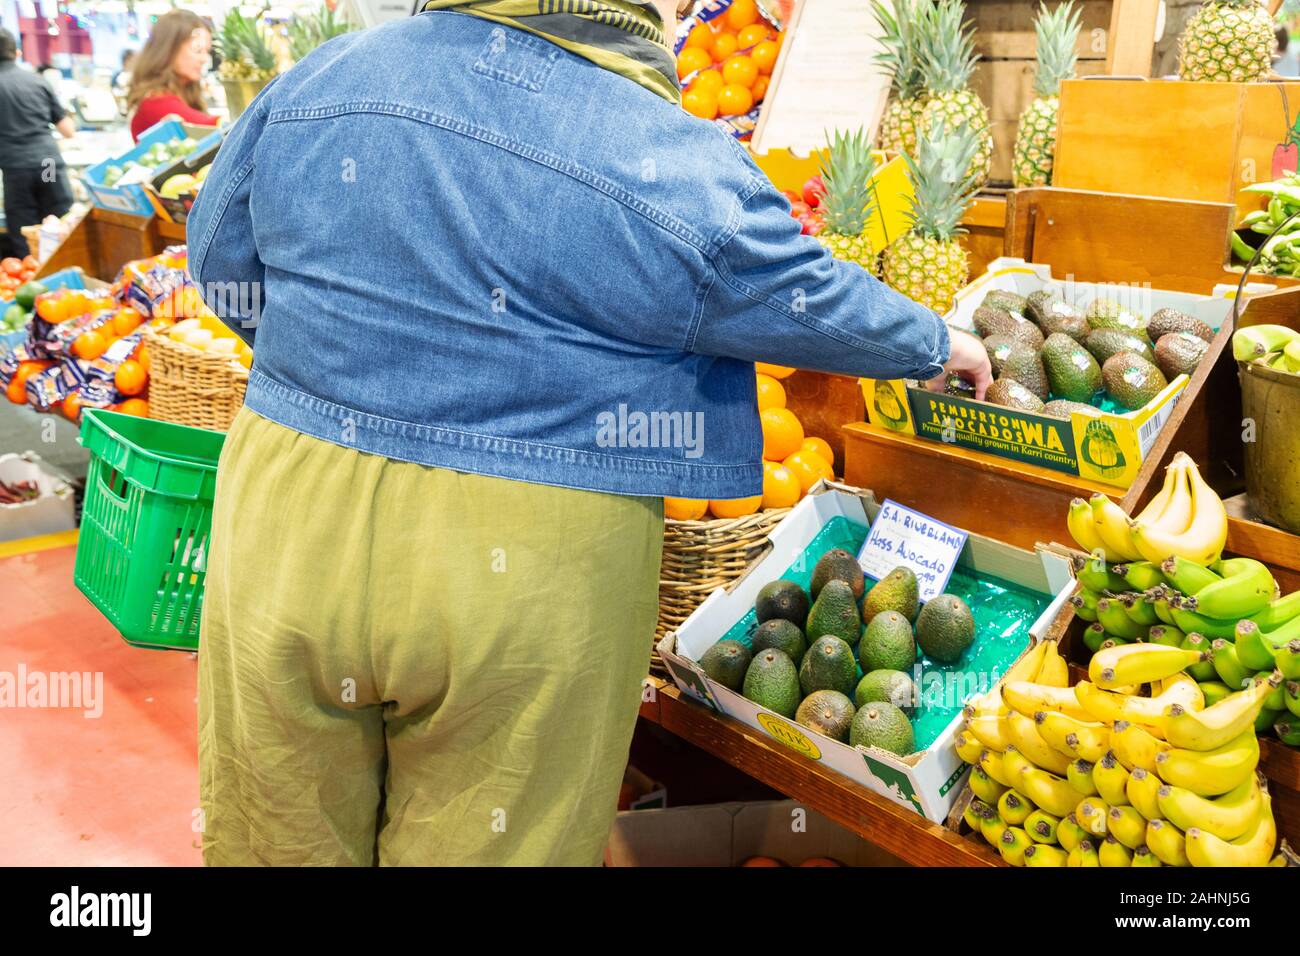 L'Australie l'obésité - une personne obèse pour acheter de la nourriture, dans un marché d'alimentation, vue arrière, Australie Banque D'Images